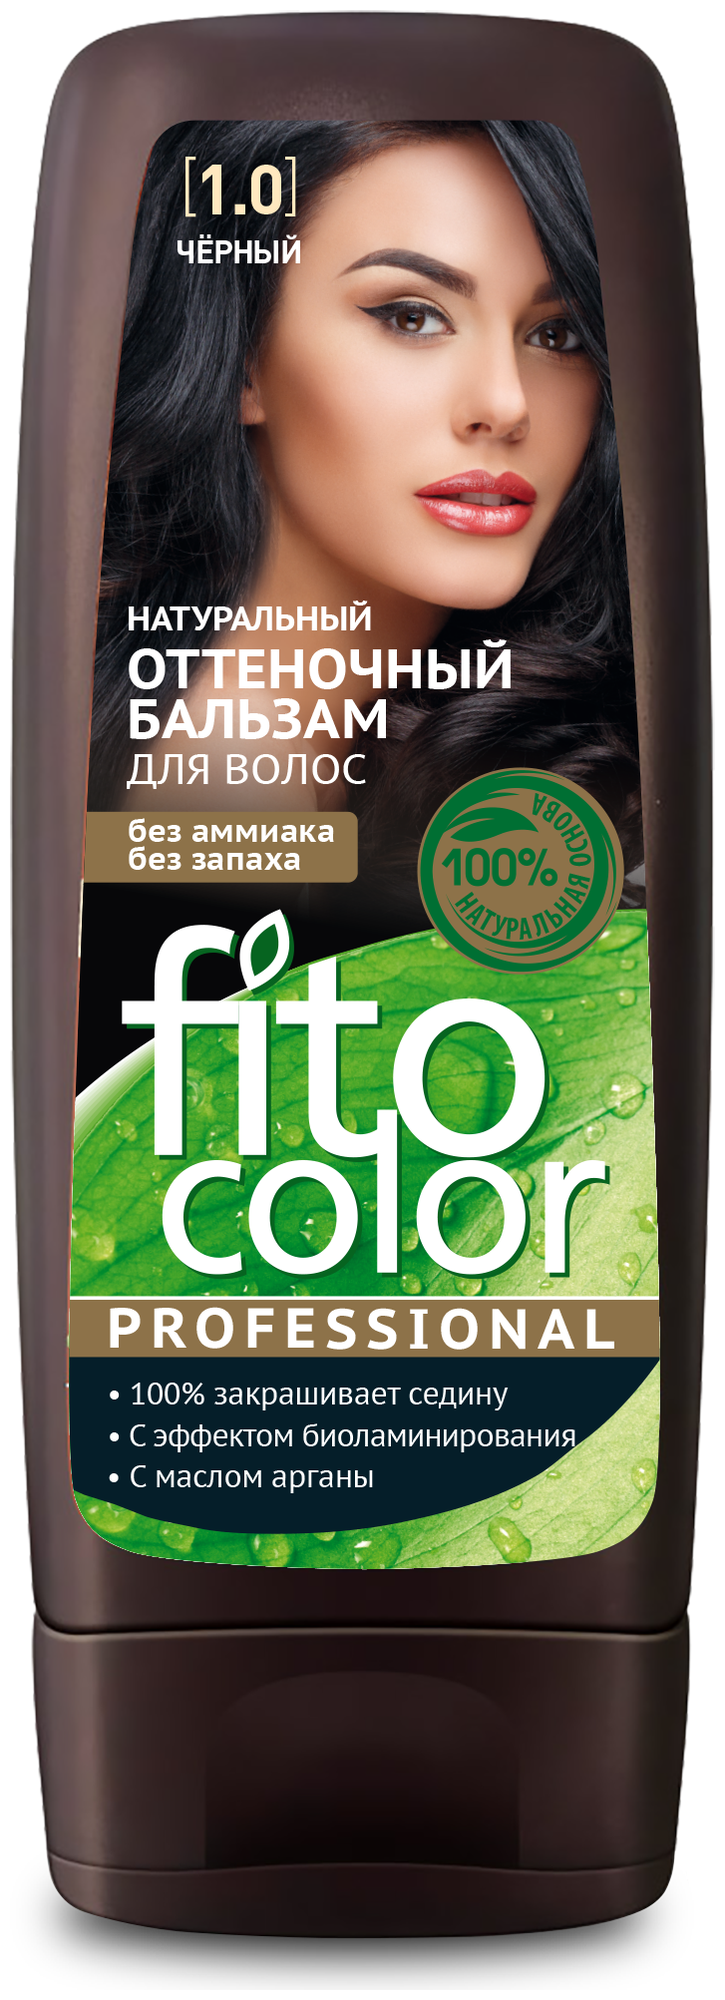 Fito косметик оттеночный бальзам для волос Color Professional тон Черный 1.0